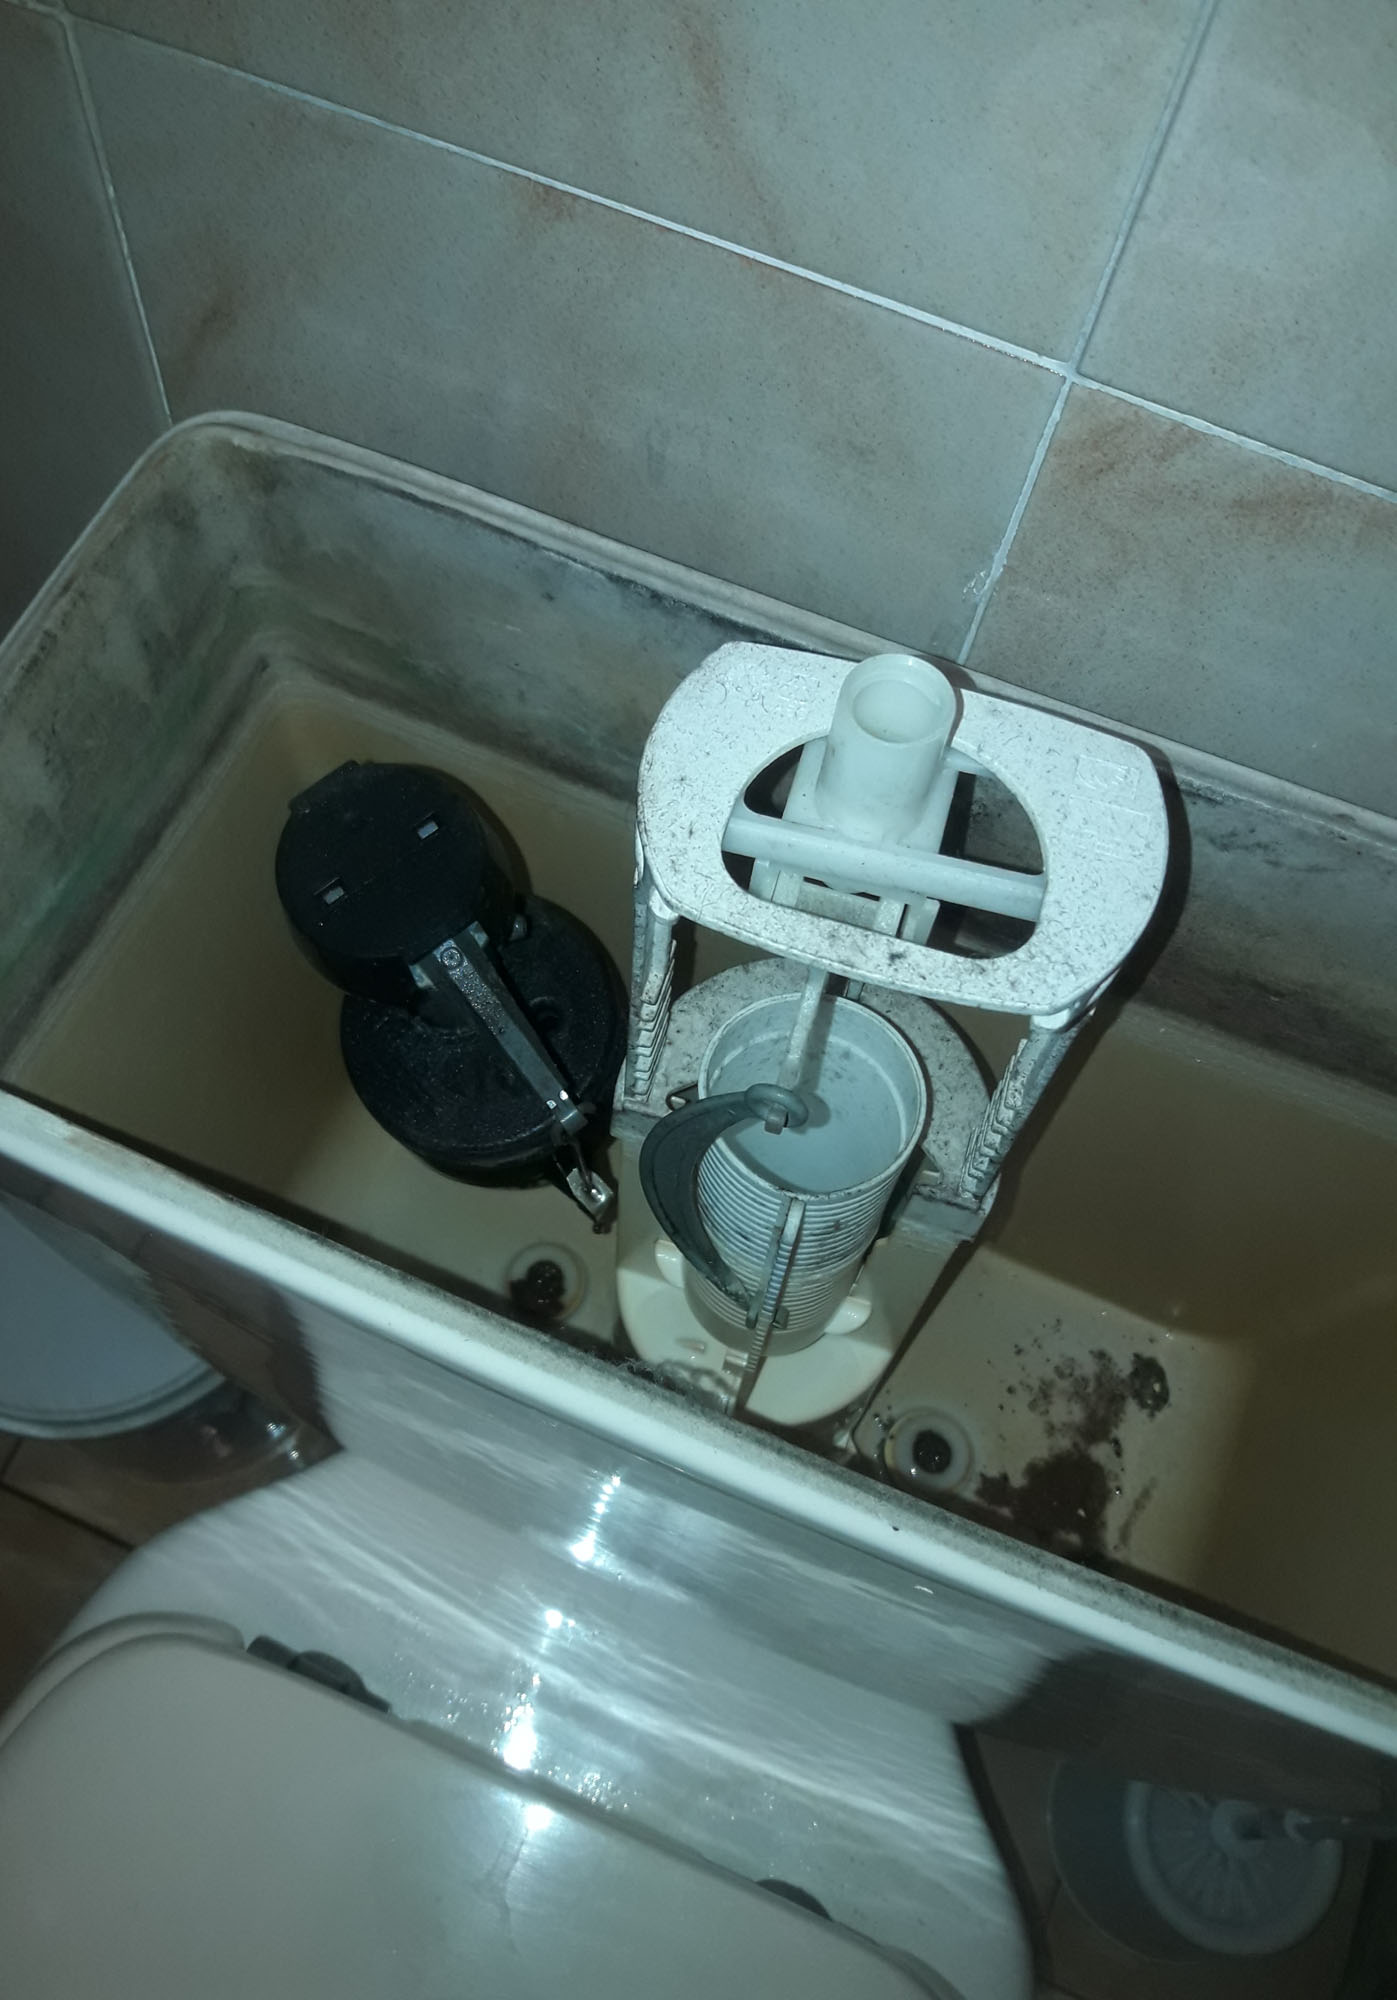 Remplacement du mécanisme flotteur du wc a Aix en provence